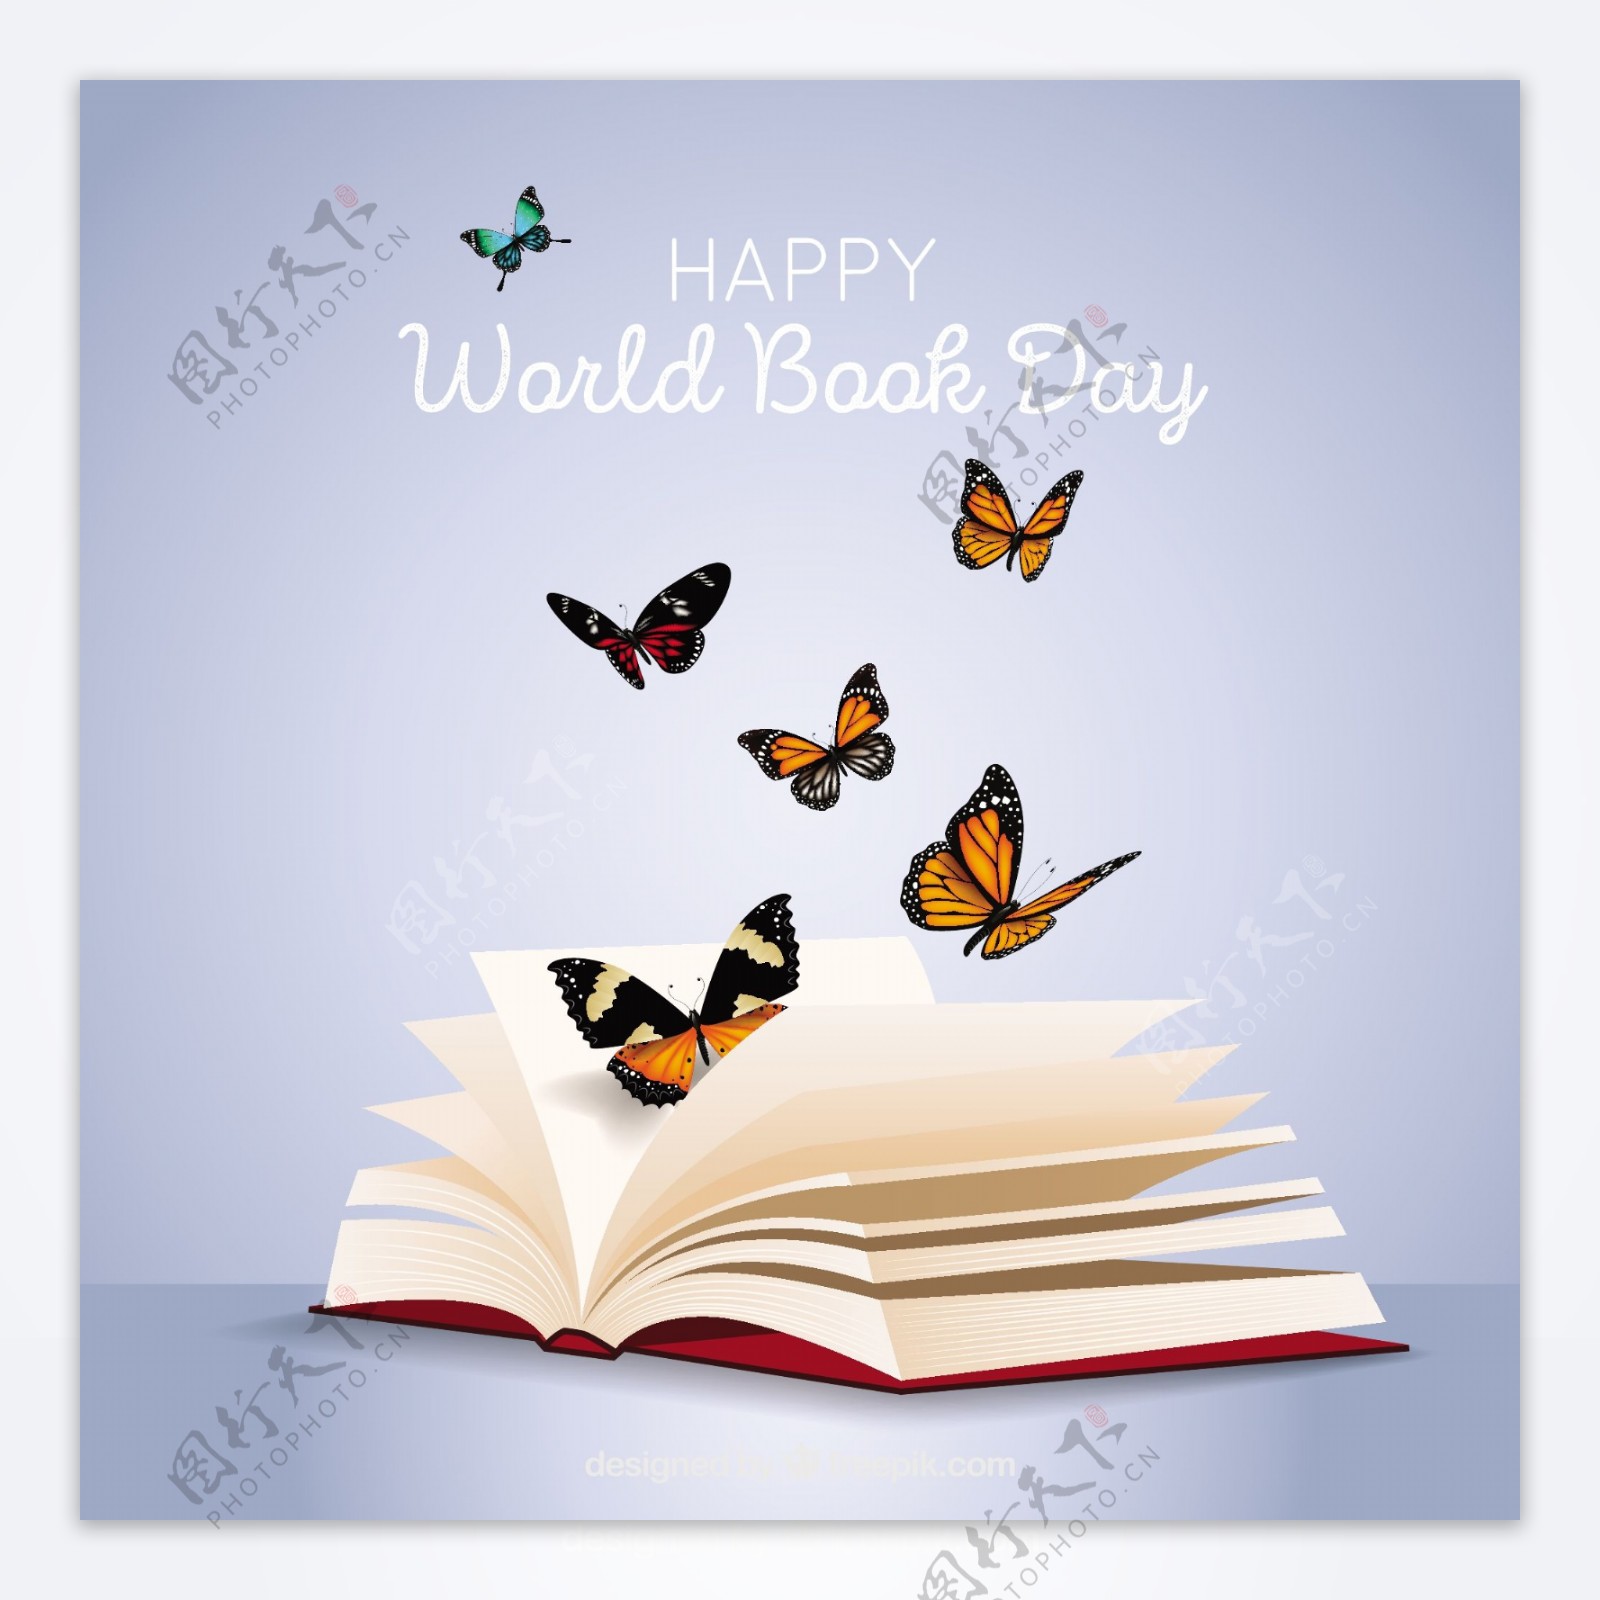 世界图书日背景与蝴蝶的写实风格